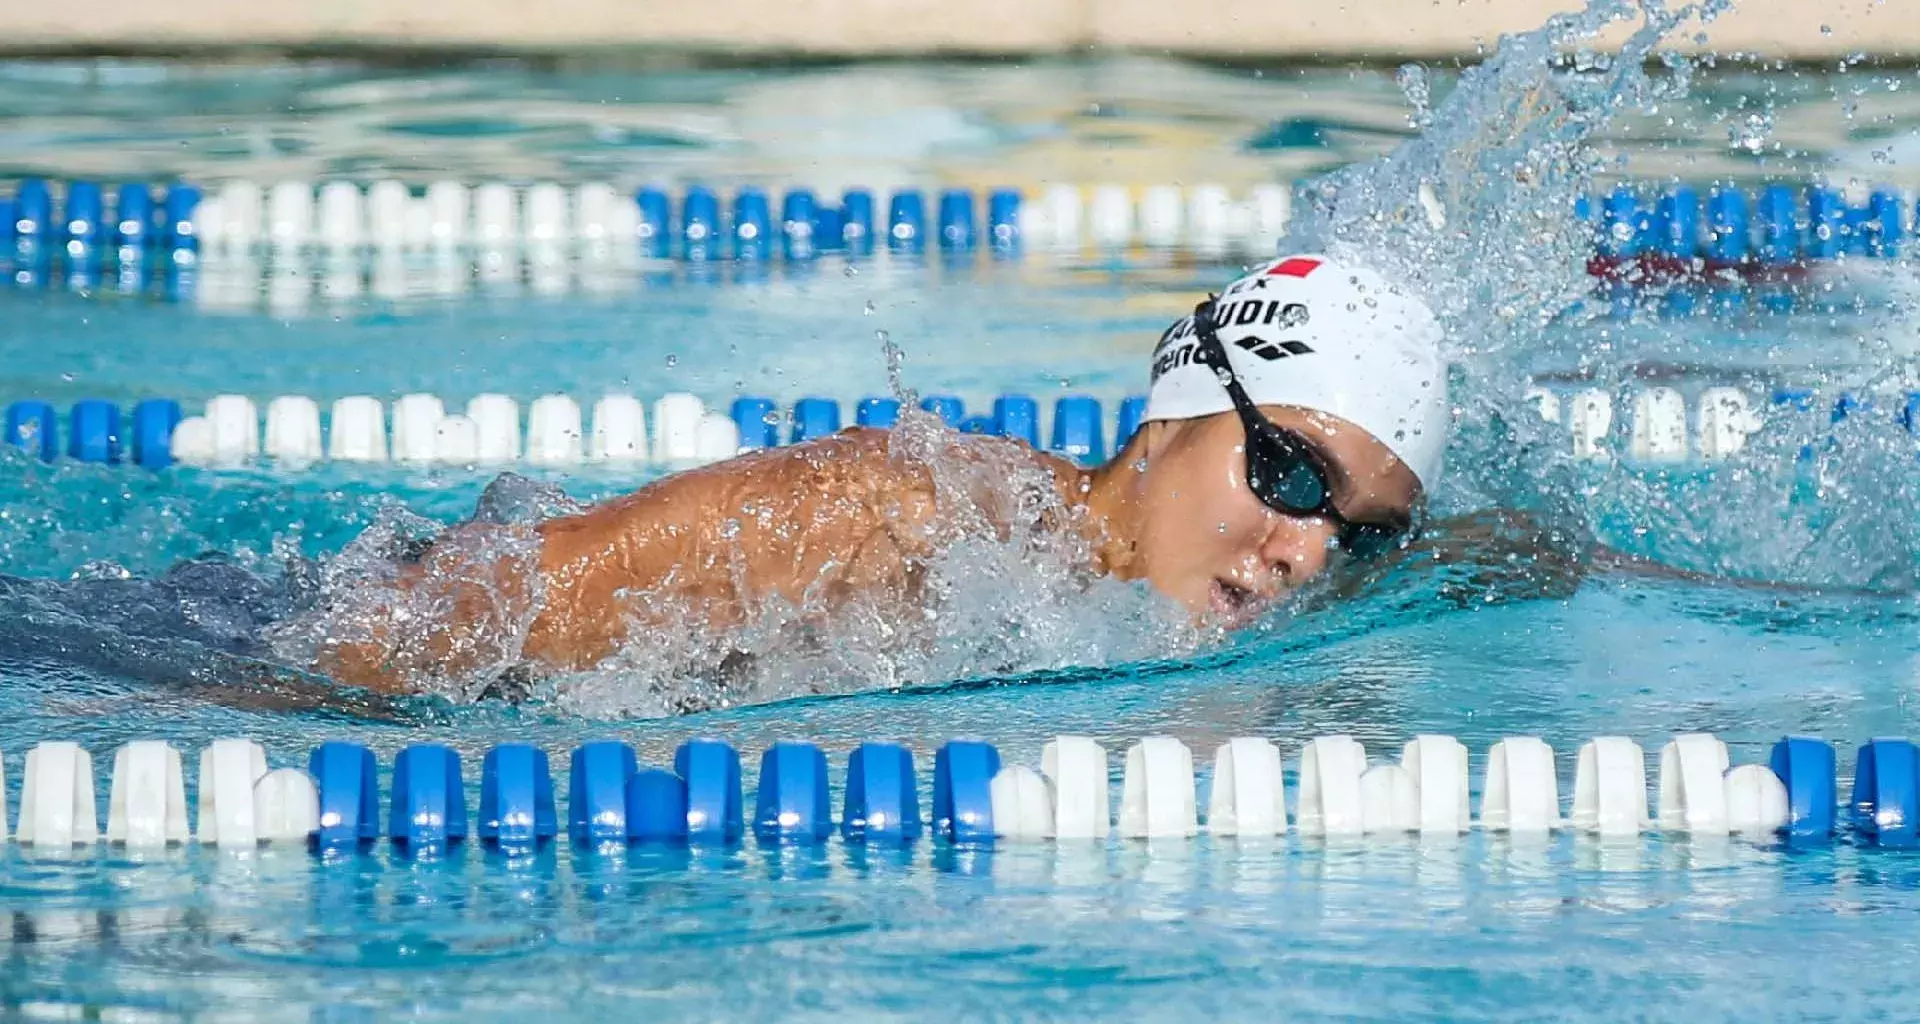 Alumna PrepaTec gana medalla de plata en campeonato centroamericano de natación.